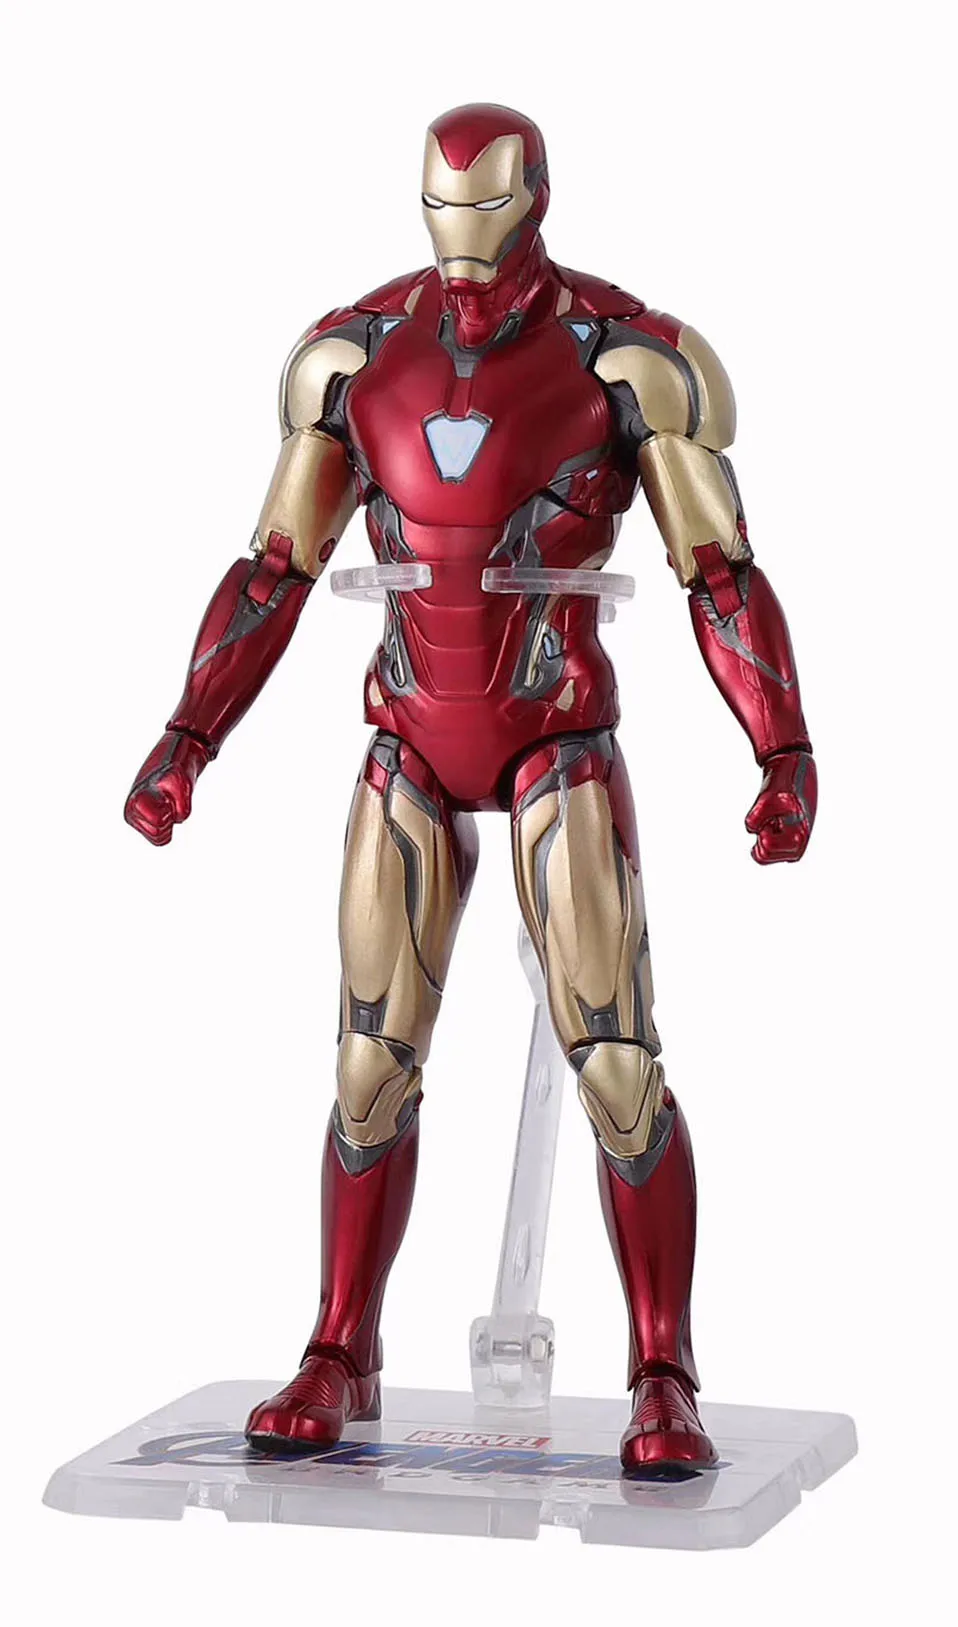 6 дюймов база Marvel MK 85 Железный человек фигурка Мстители 4 Тор Джеймс Родос подвижная фигурка модель игрушки для детей